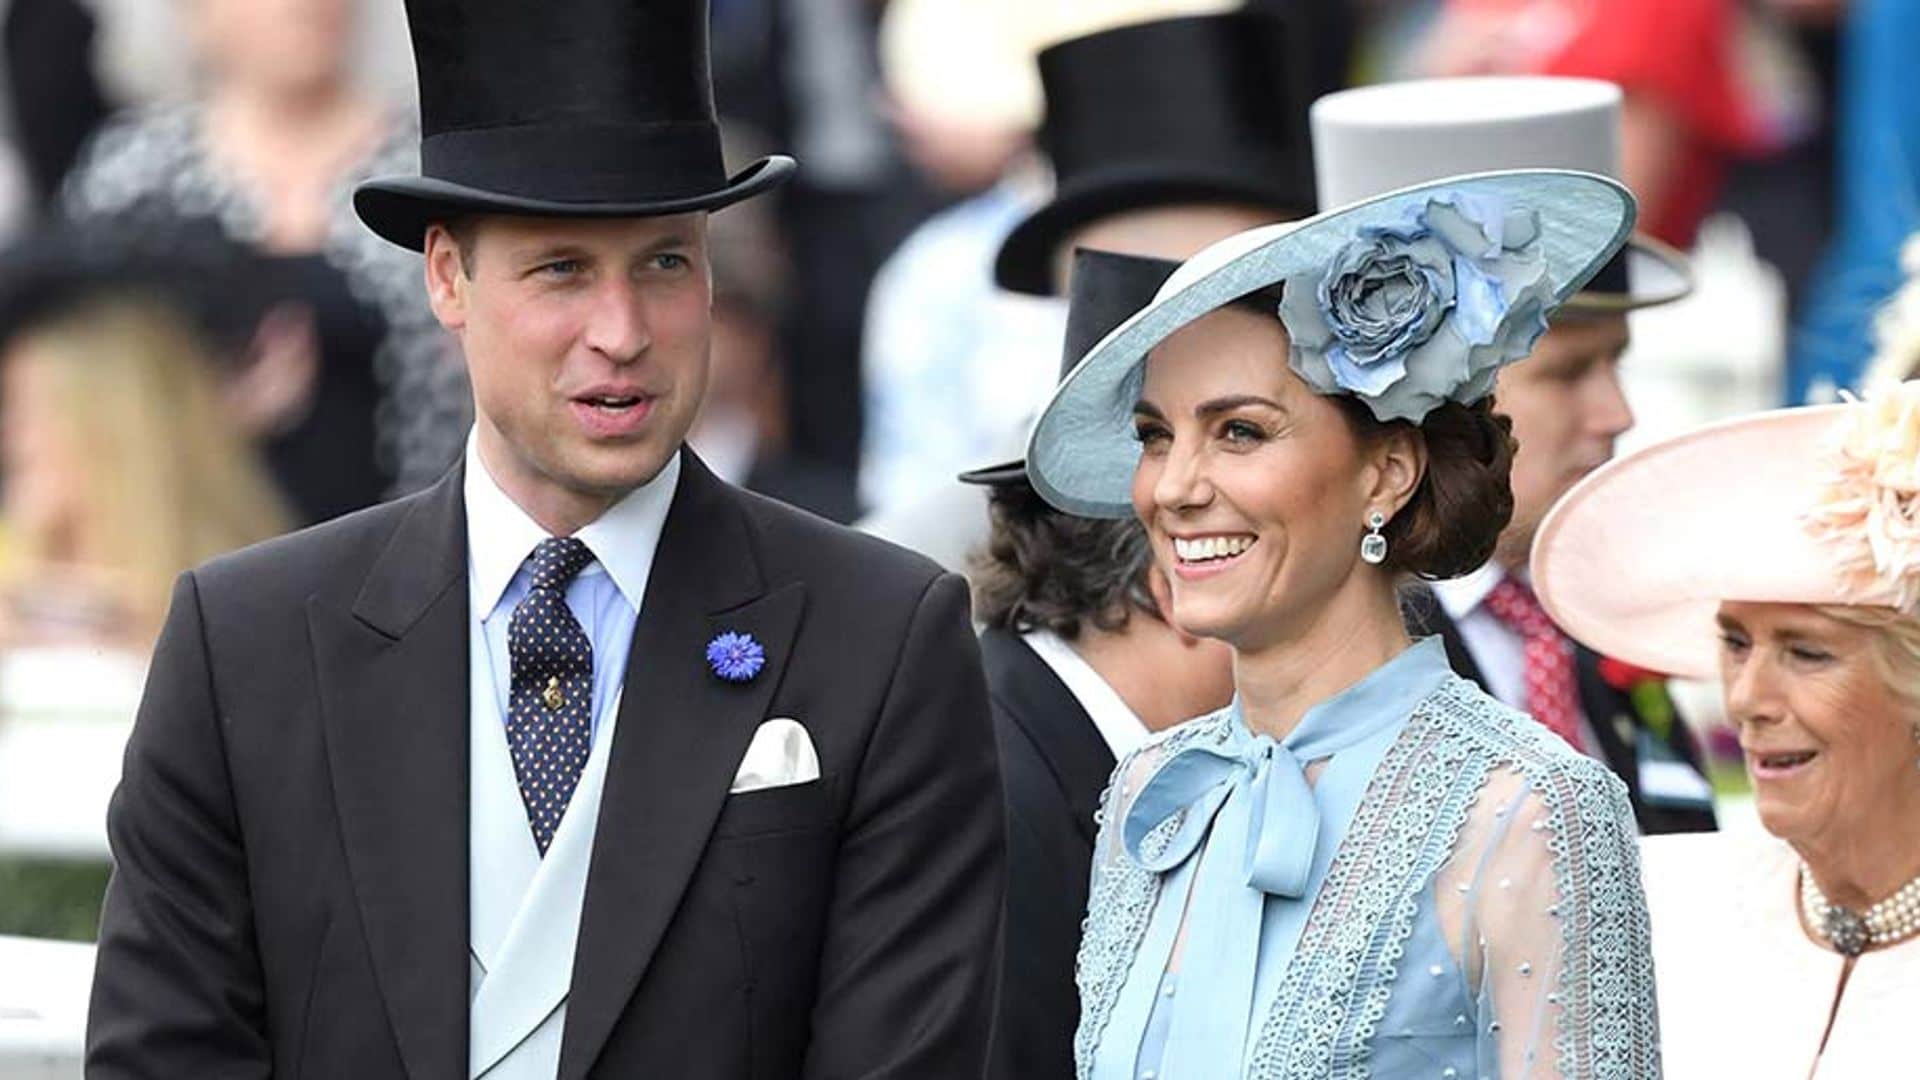 Prince Willam and Kate at Royal Ascot 2019